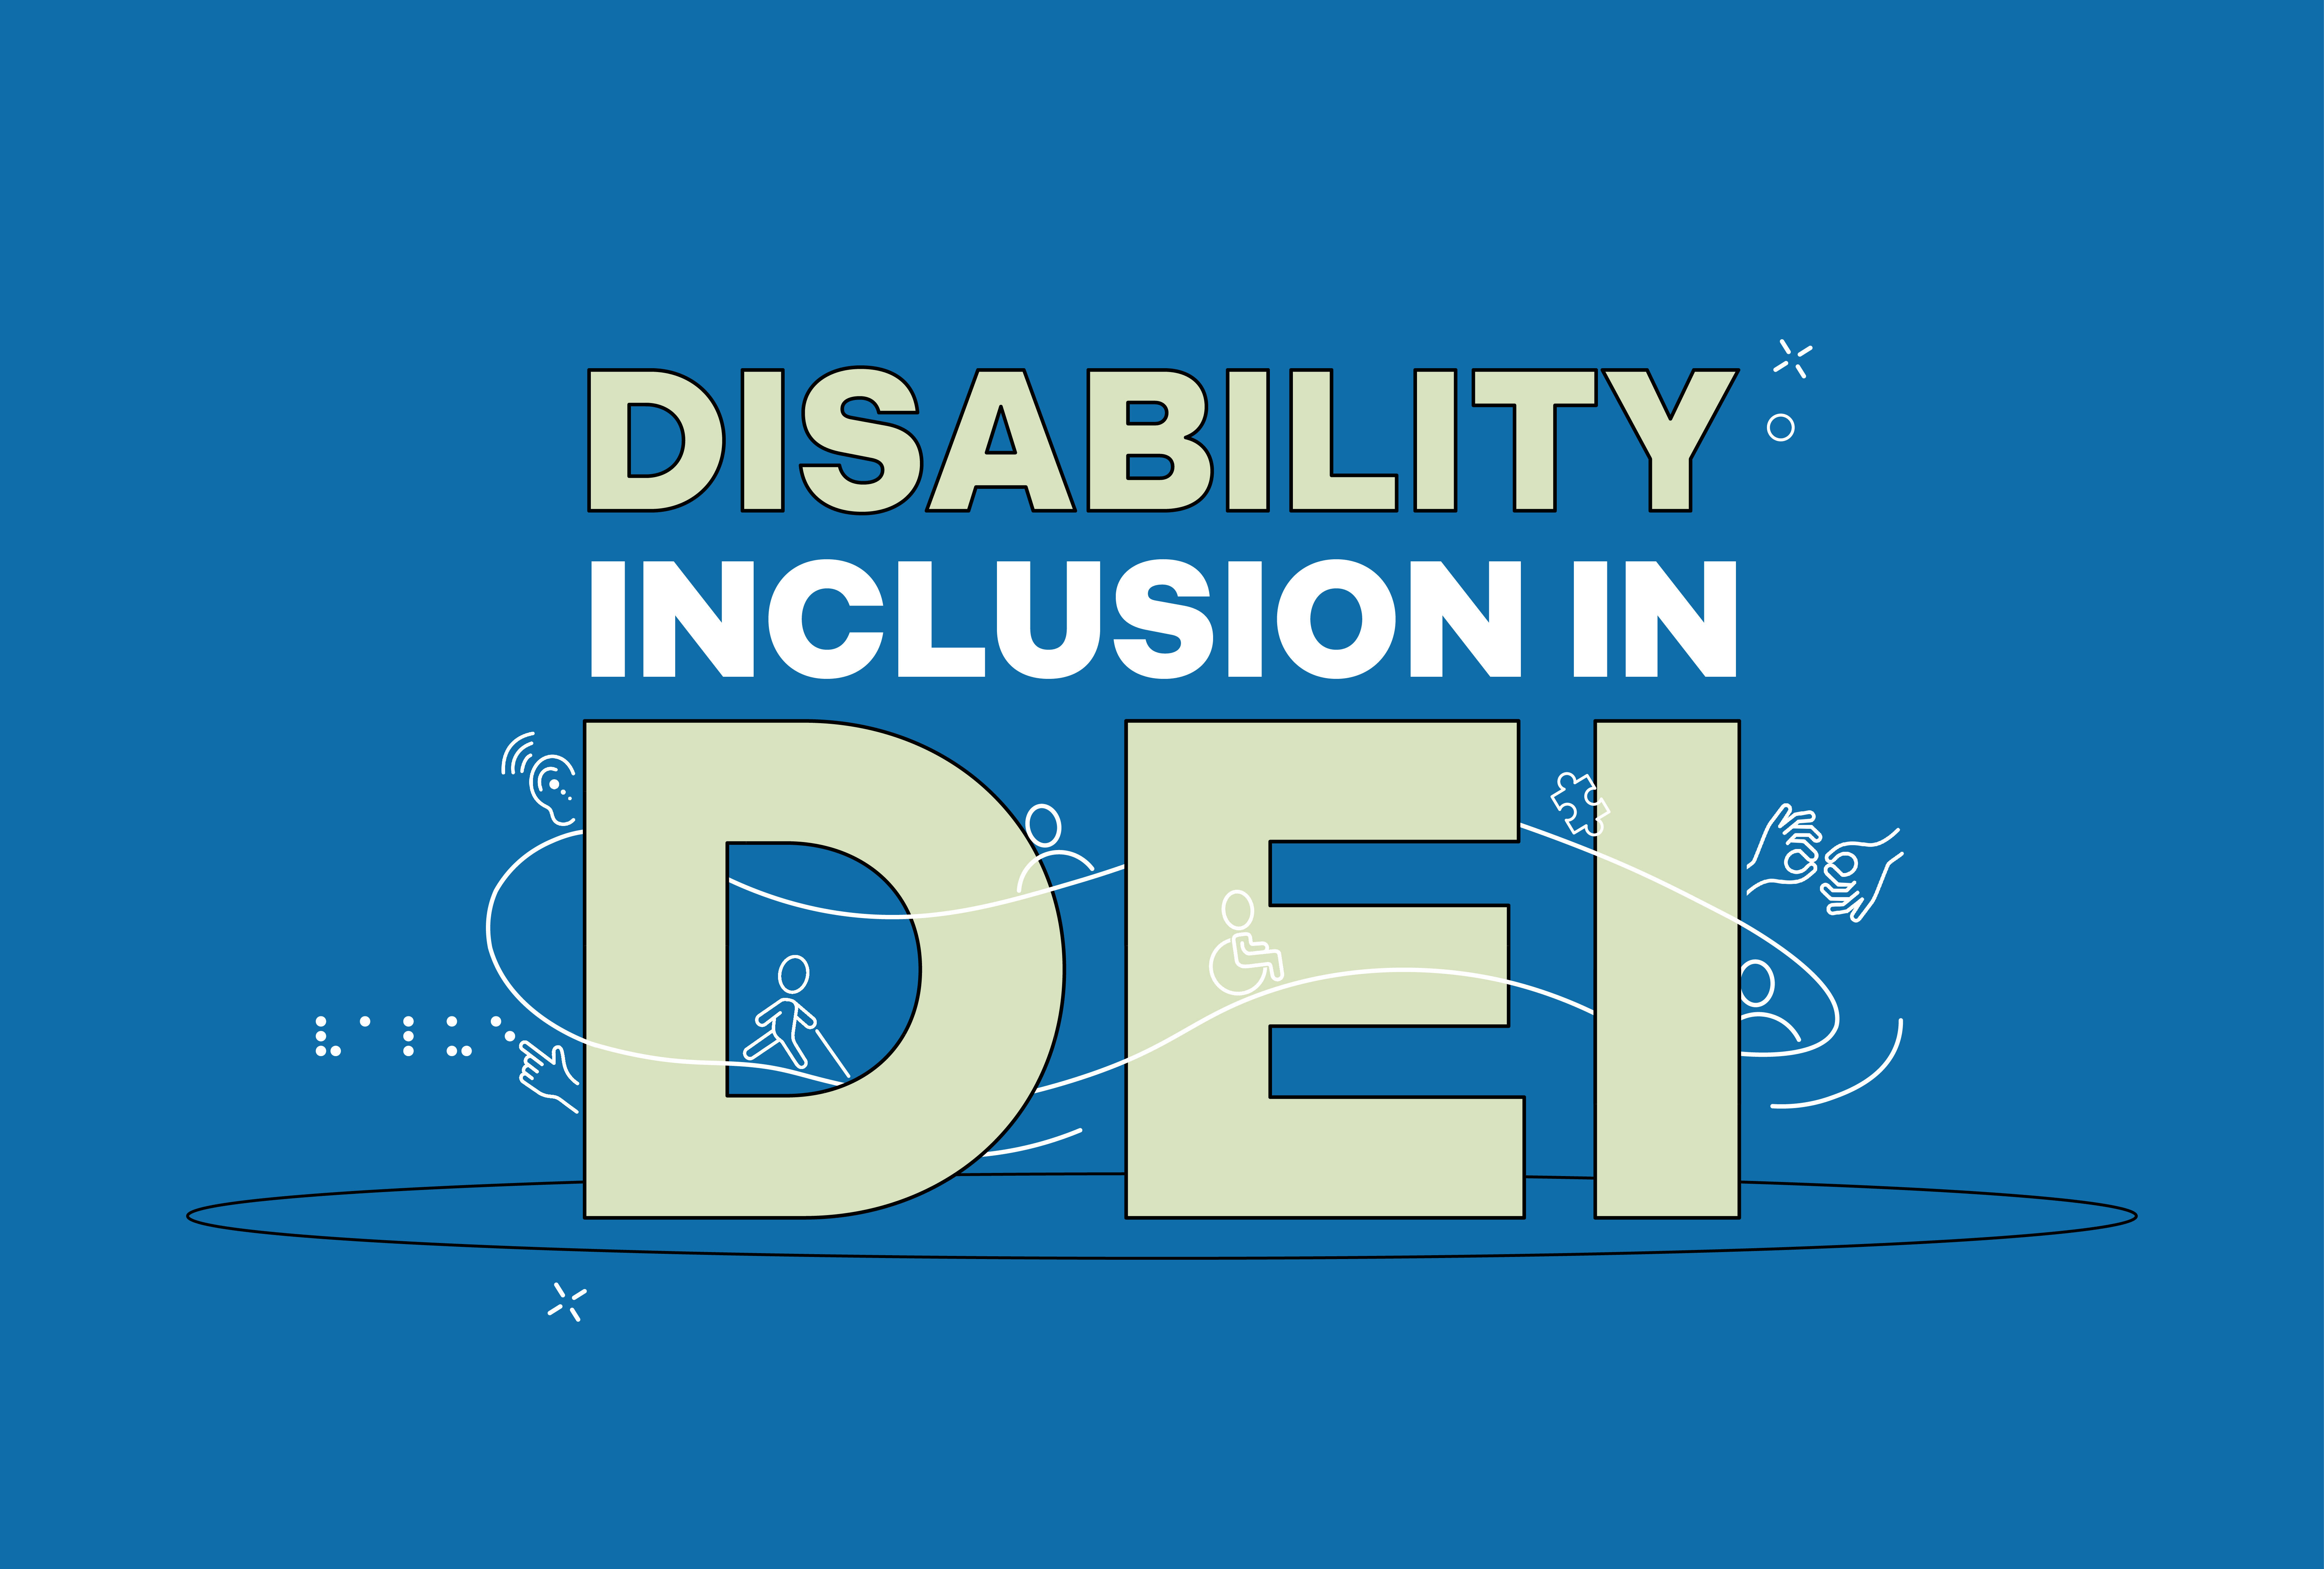 DEI Illustration, reads "Disability Inclusion in DEI"